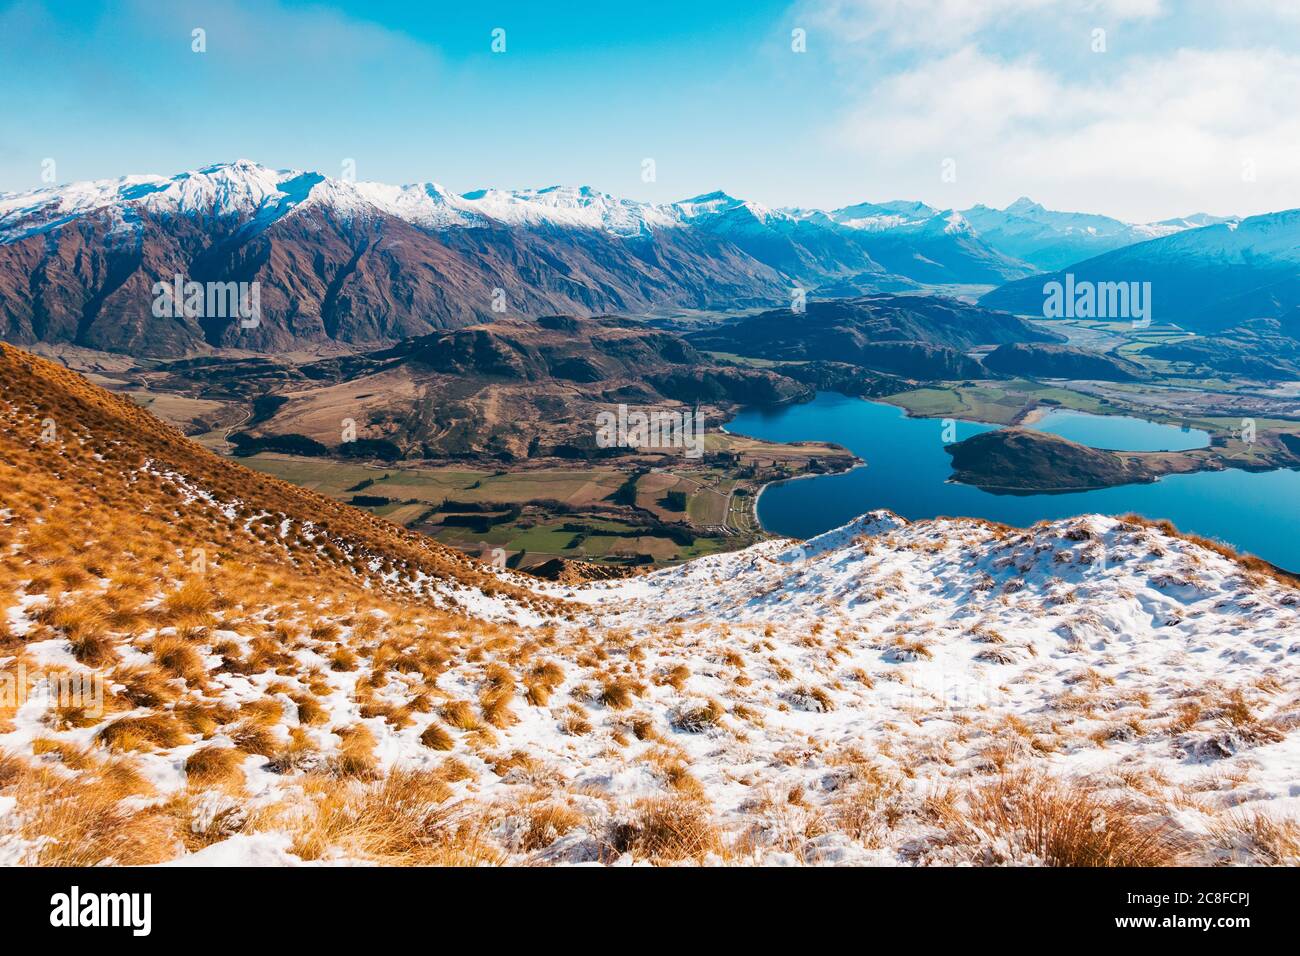 Les montagnes Harris et le lac Wanaka dans les Alpes du Sud de la Nouvelle-Zélande, vus de Roys Peak Track Banque D'Images